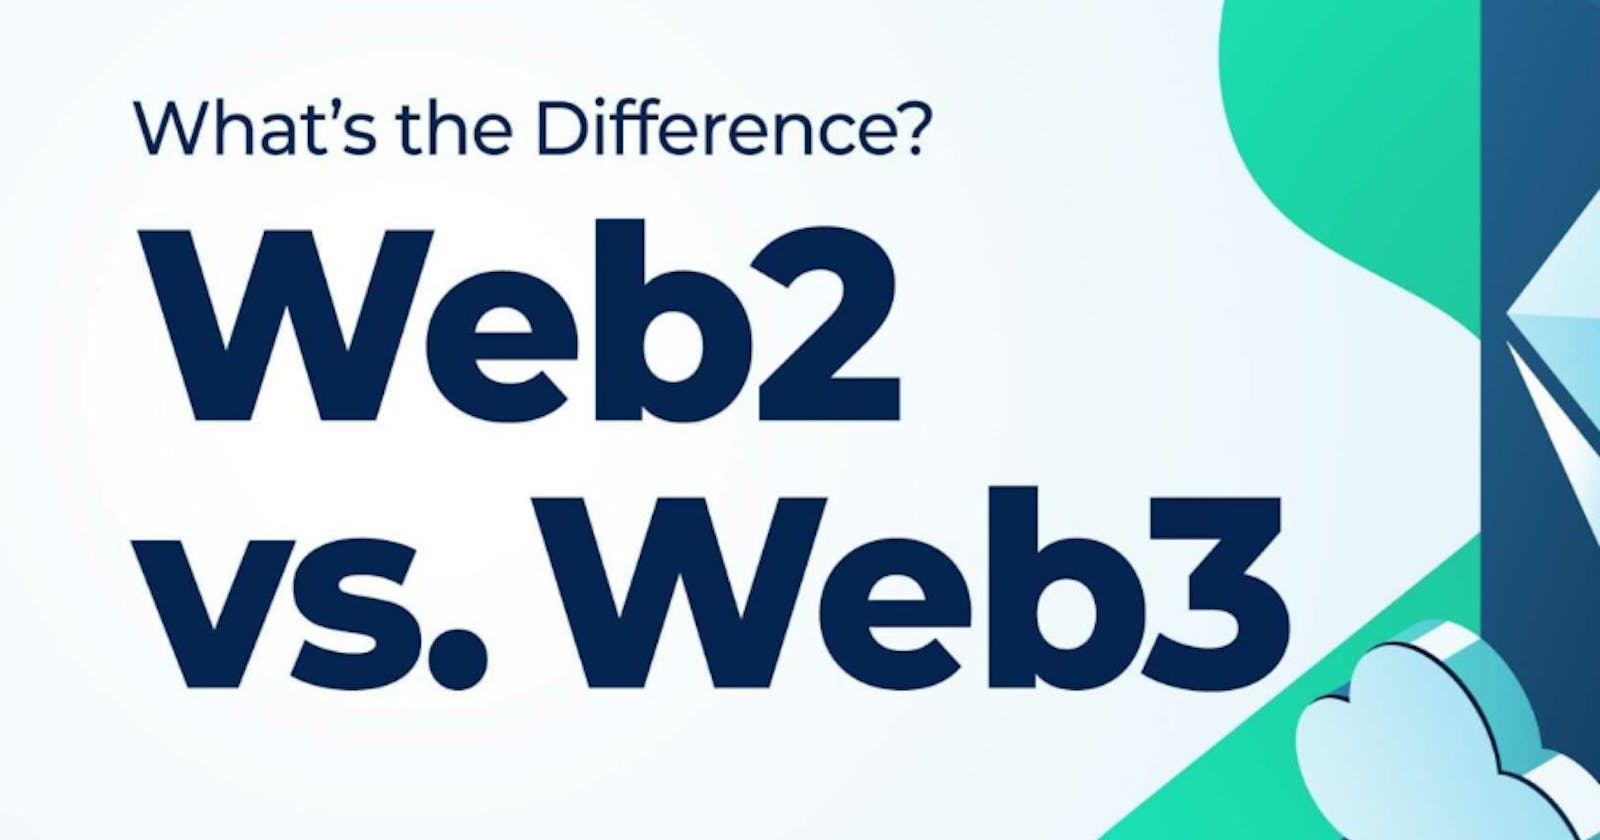 Web 2 vs Web 3